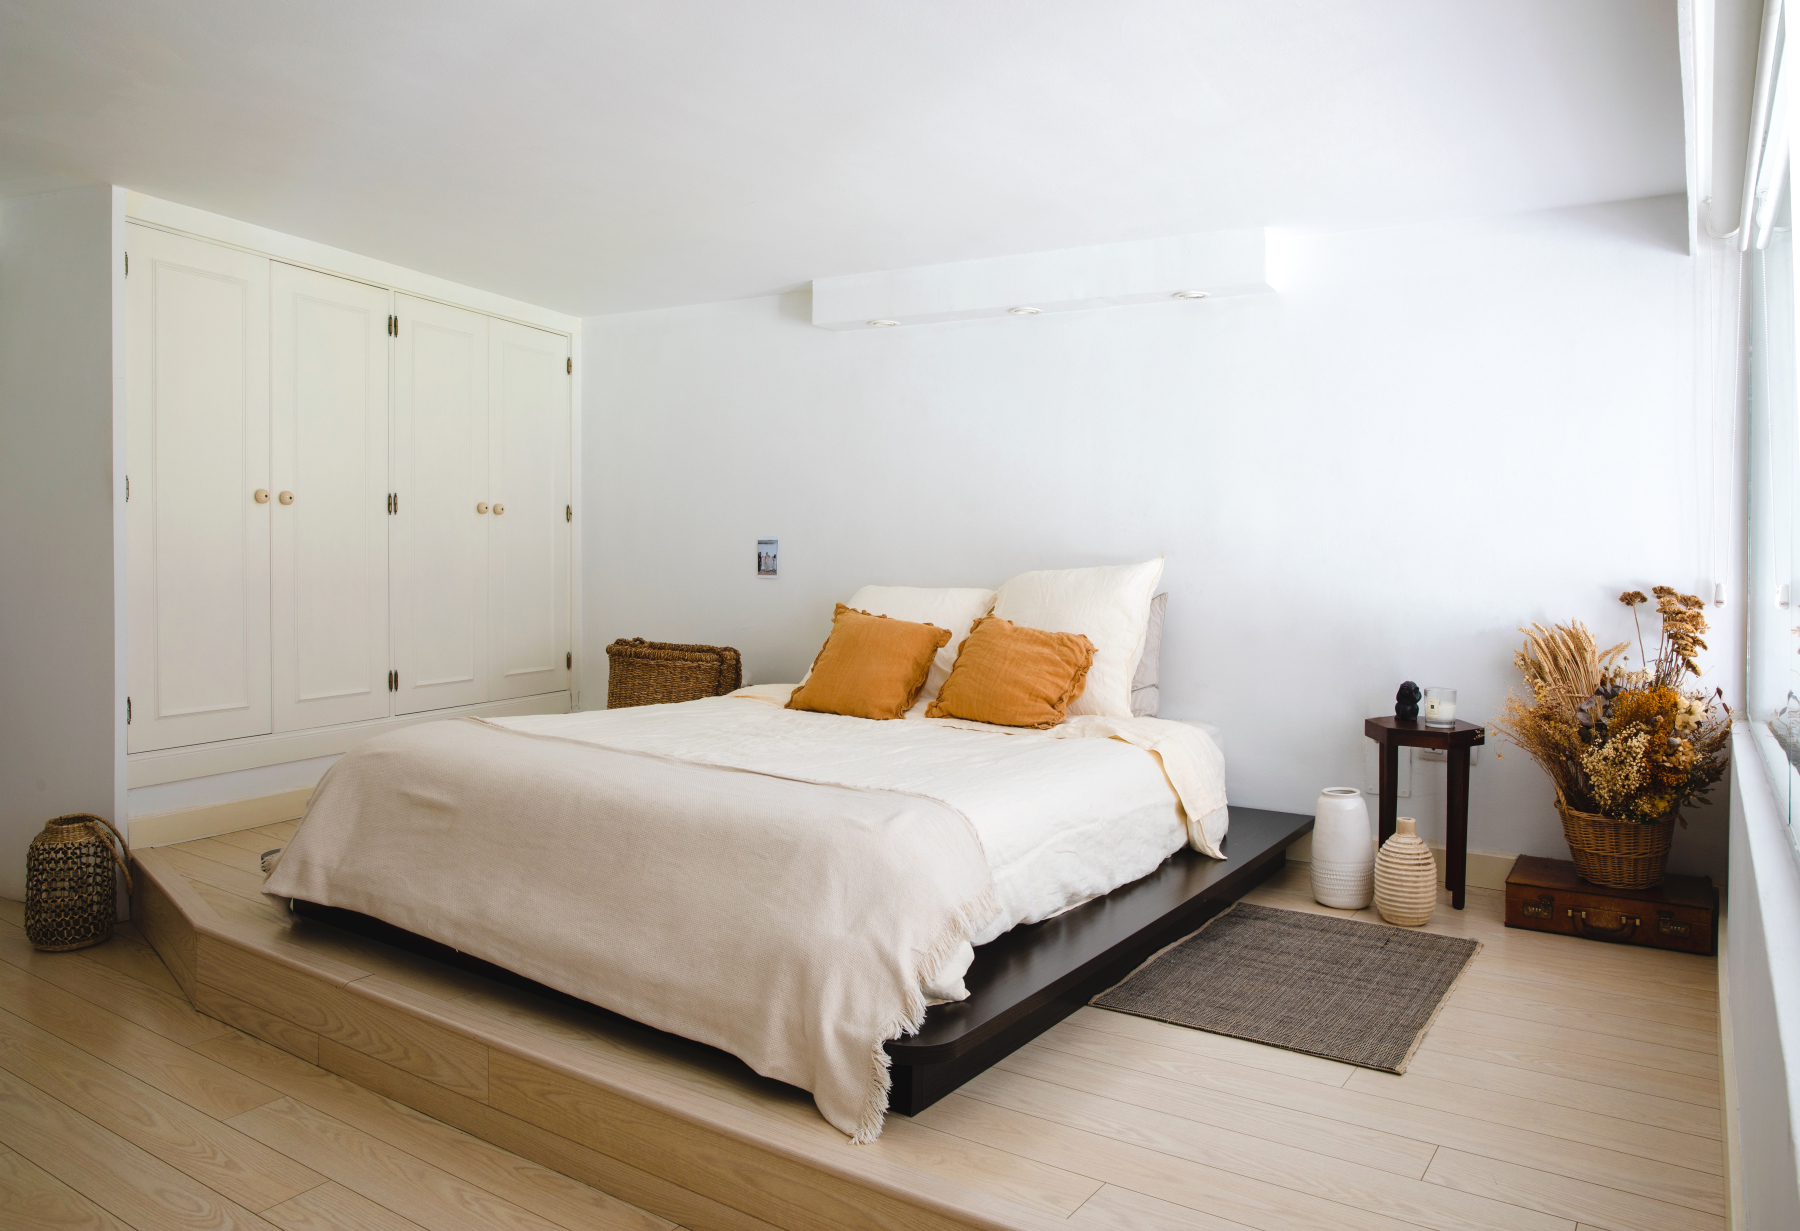 El el dormitorio de Claudia Llagostera, la cama descansa sobre un tatami y los colores neutros invitan a la relajación.